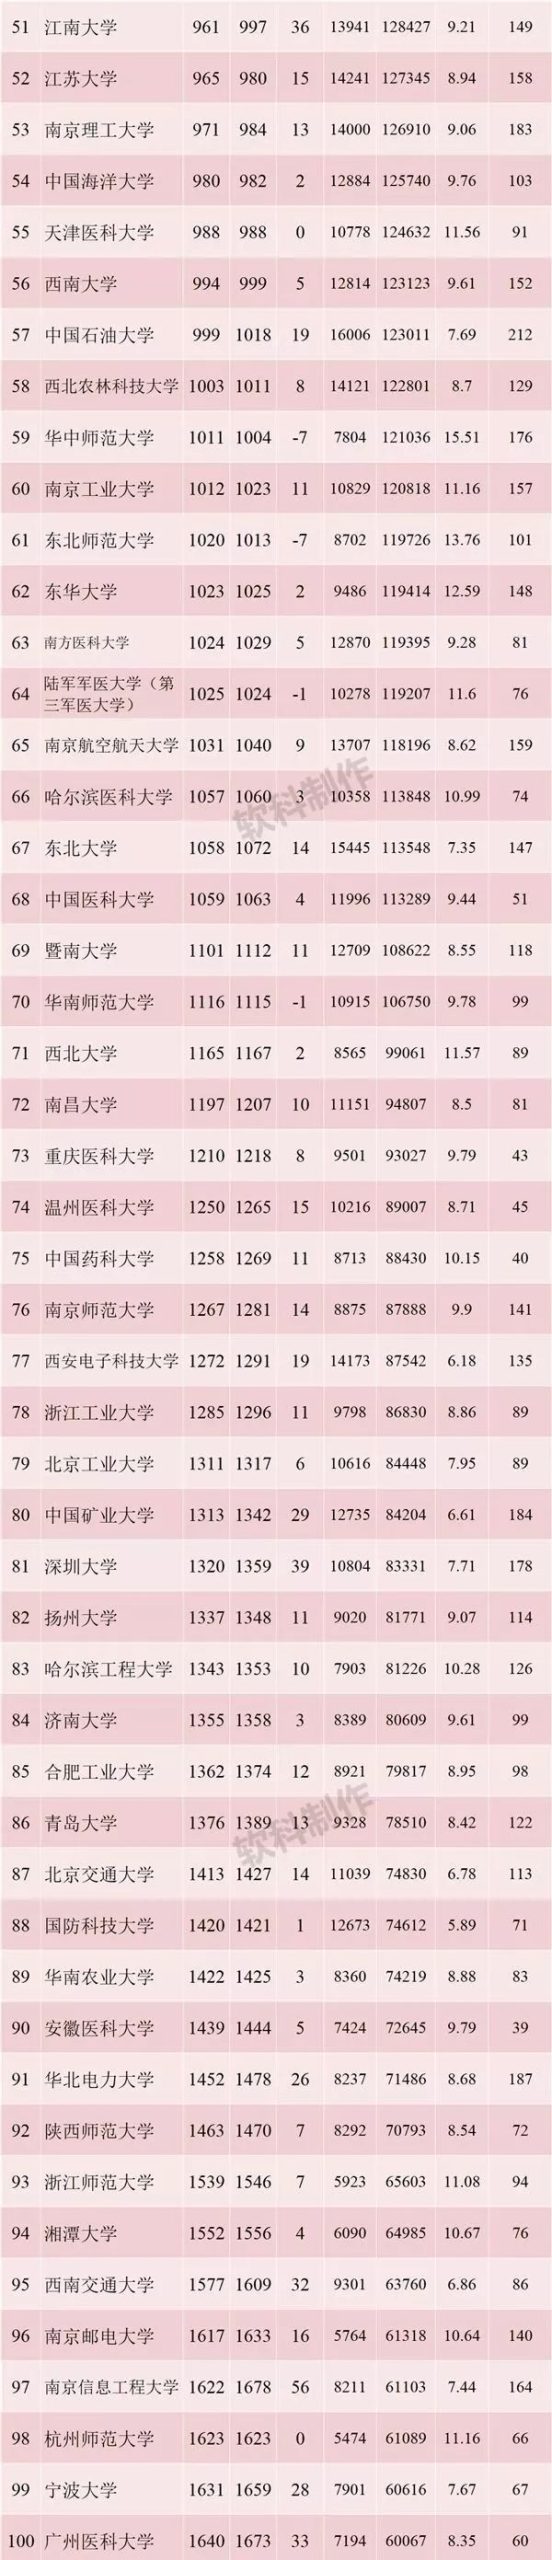 【强势围观】最新ESI中国内地高校综合排名百强出炉